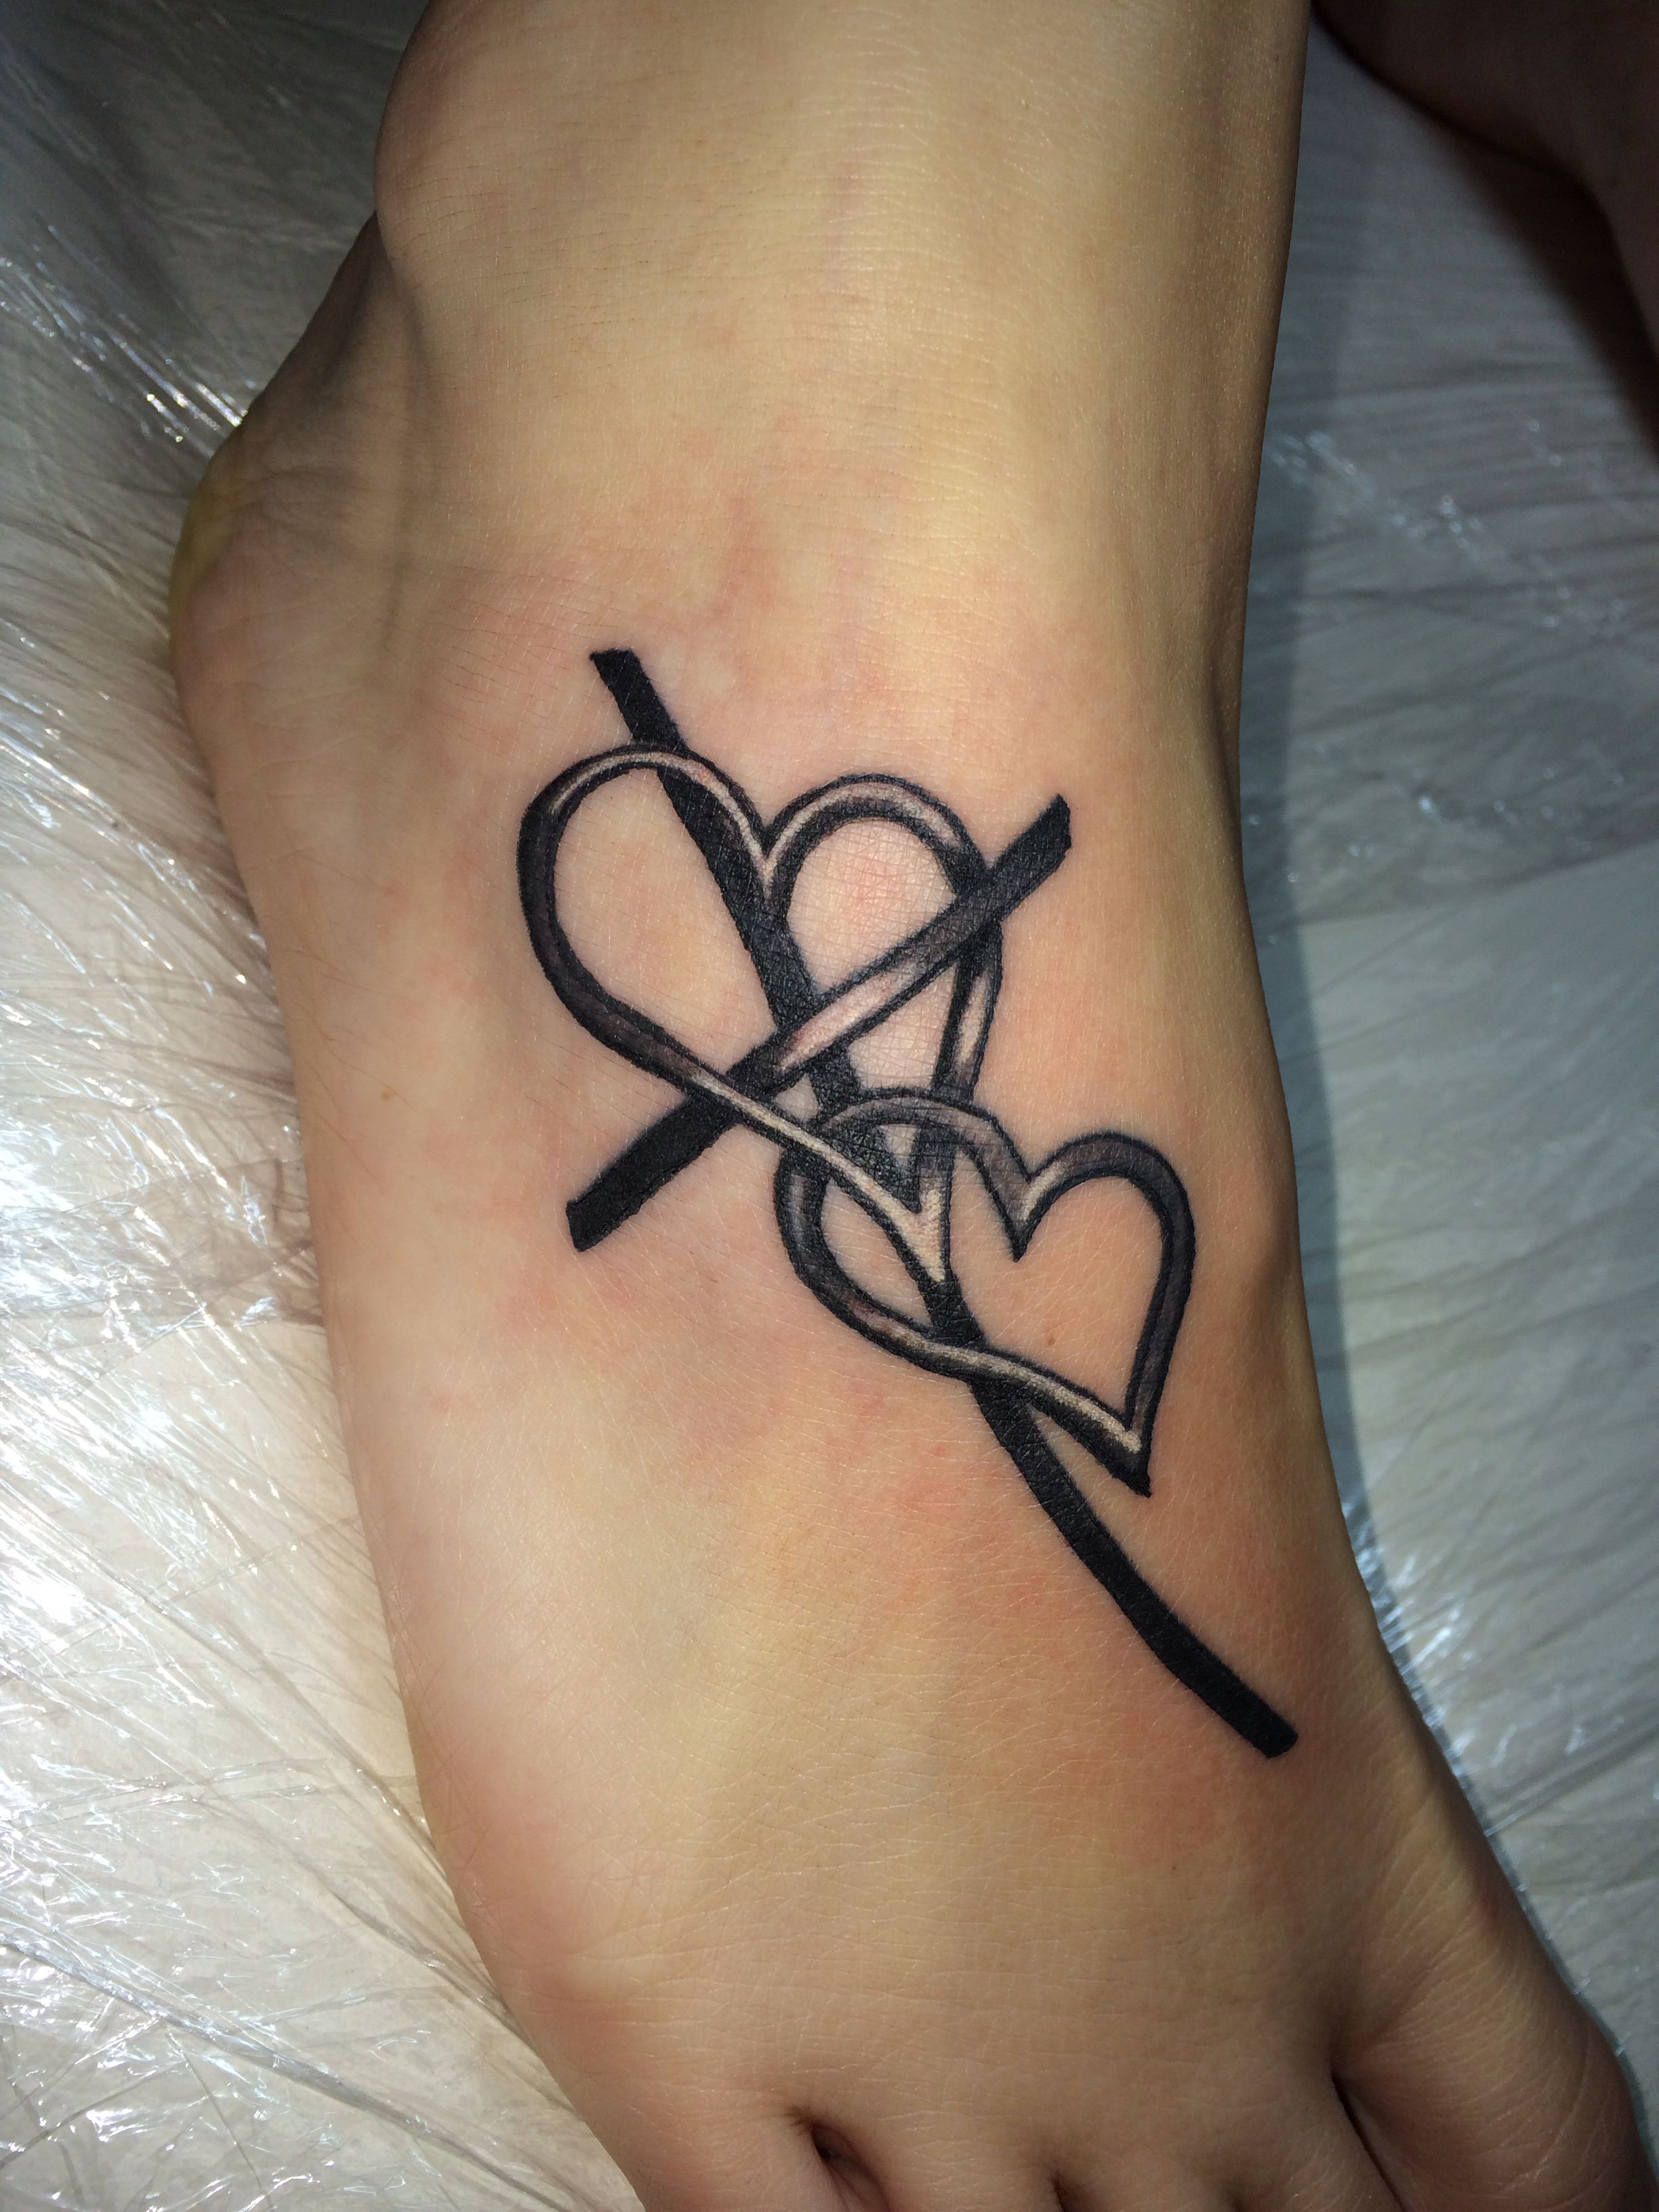 Cross Tattoo Cross With Heart Tattoo Foot Tattoo Tattoos regarding sizing 2448 X 3264